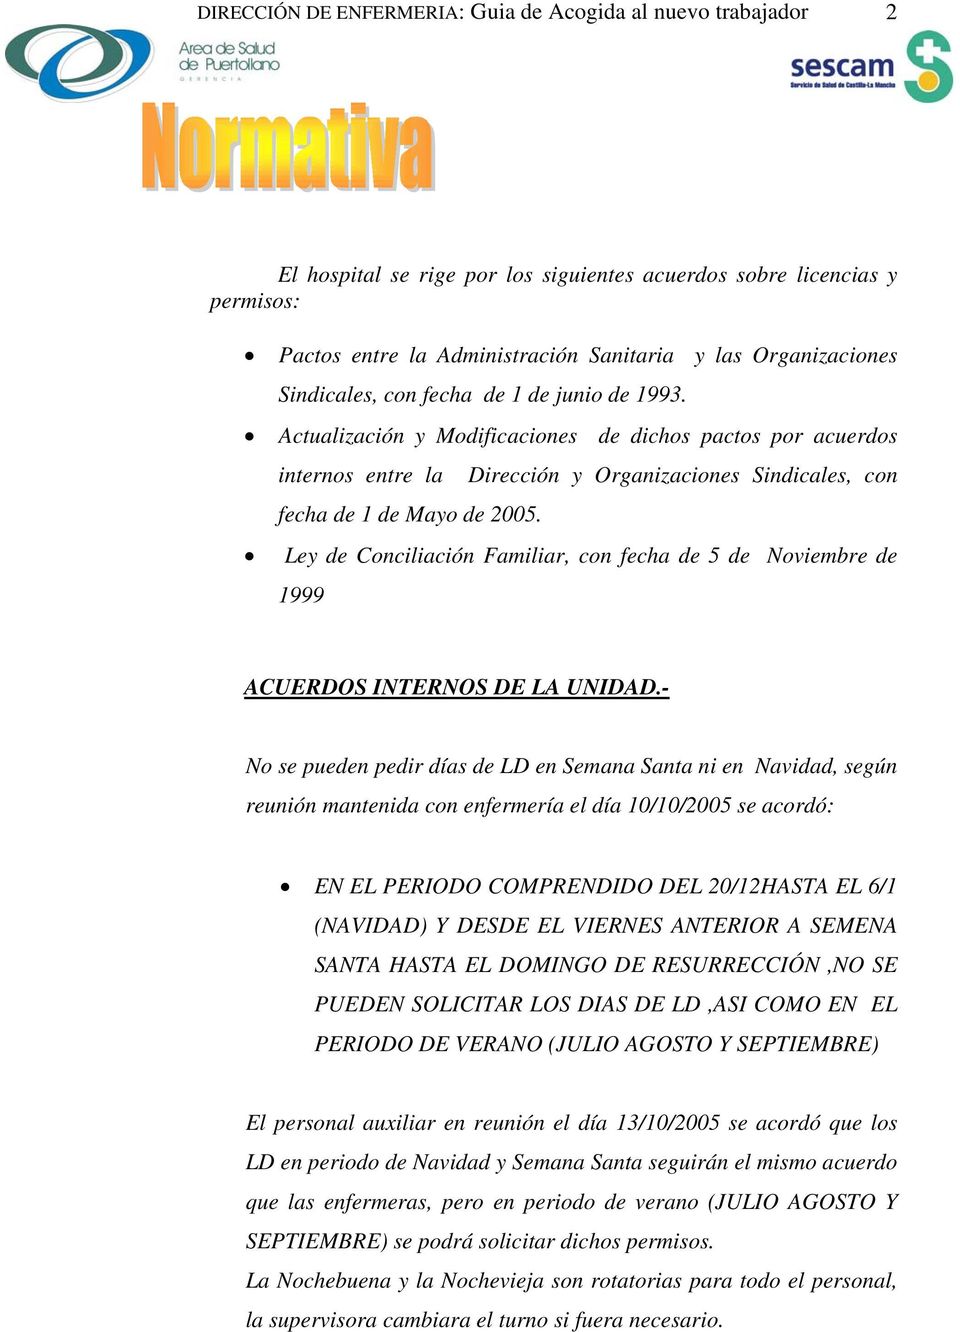 Actualización y Modificaciones de dichos pactos por acuerdos internos entre la Dirección y Organizaciones Sindicales, con fecha de 1 de Mayo de 2005.